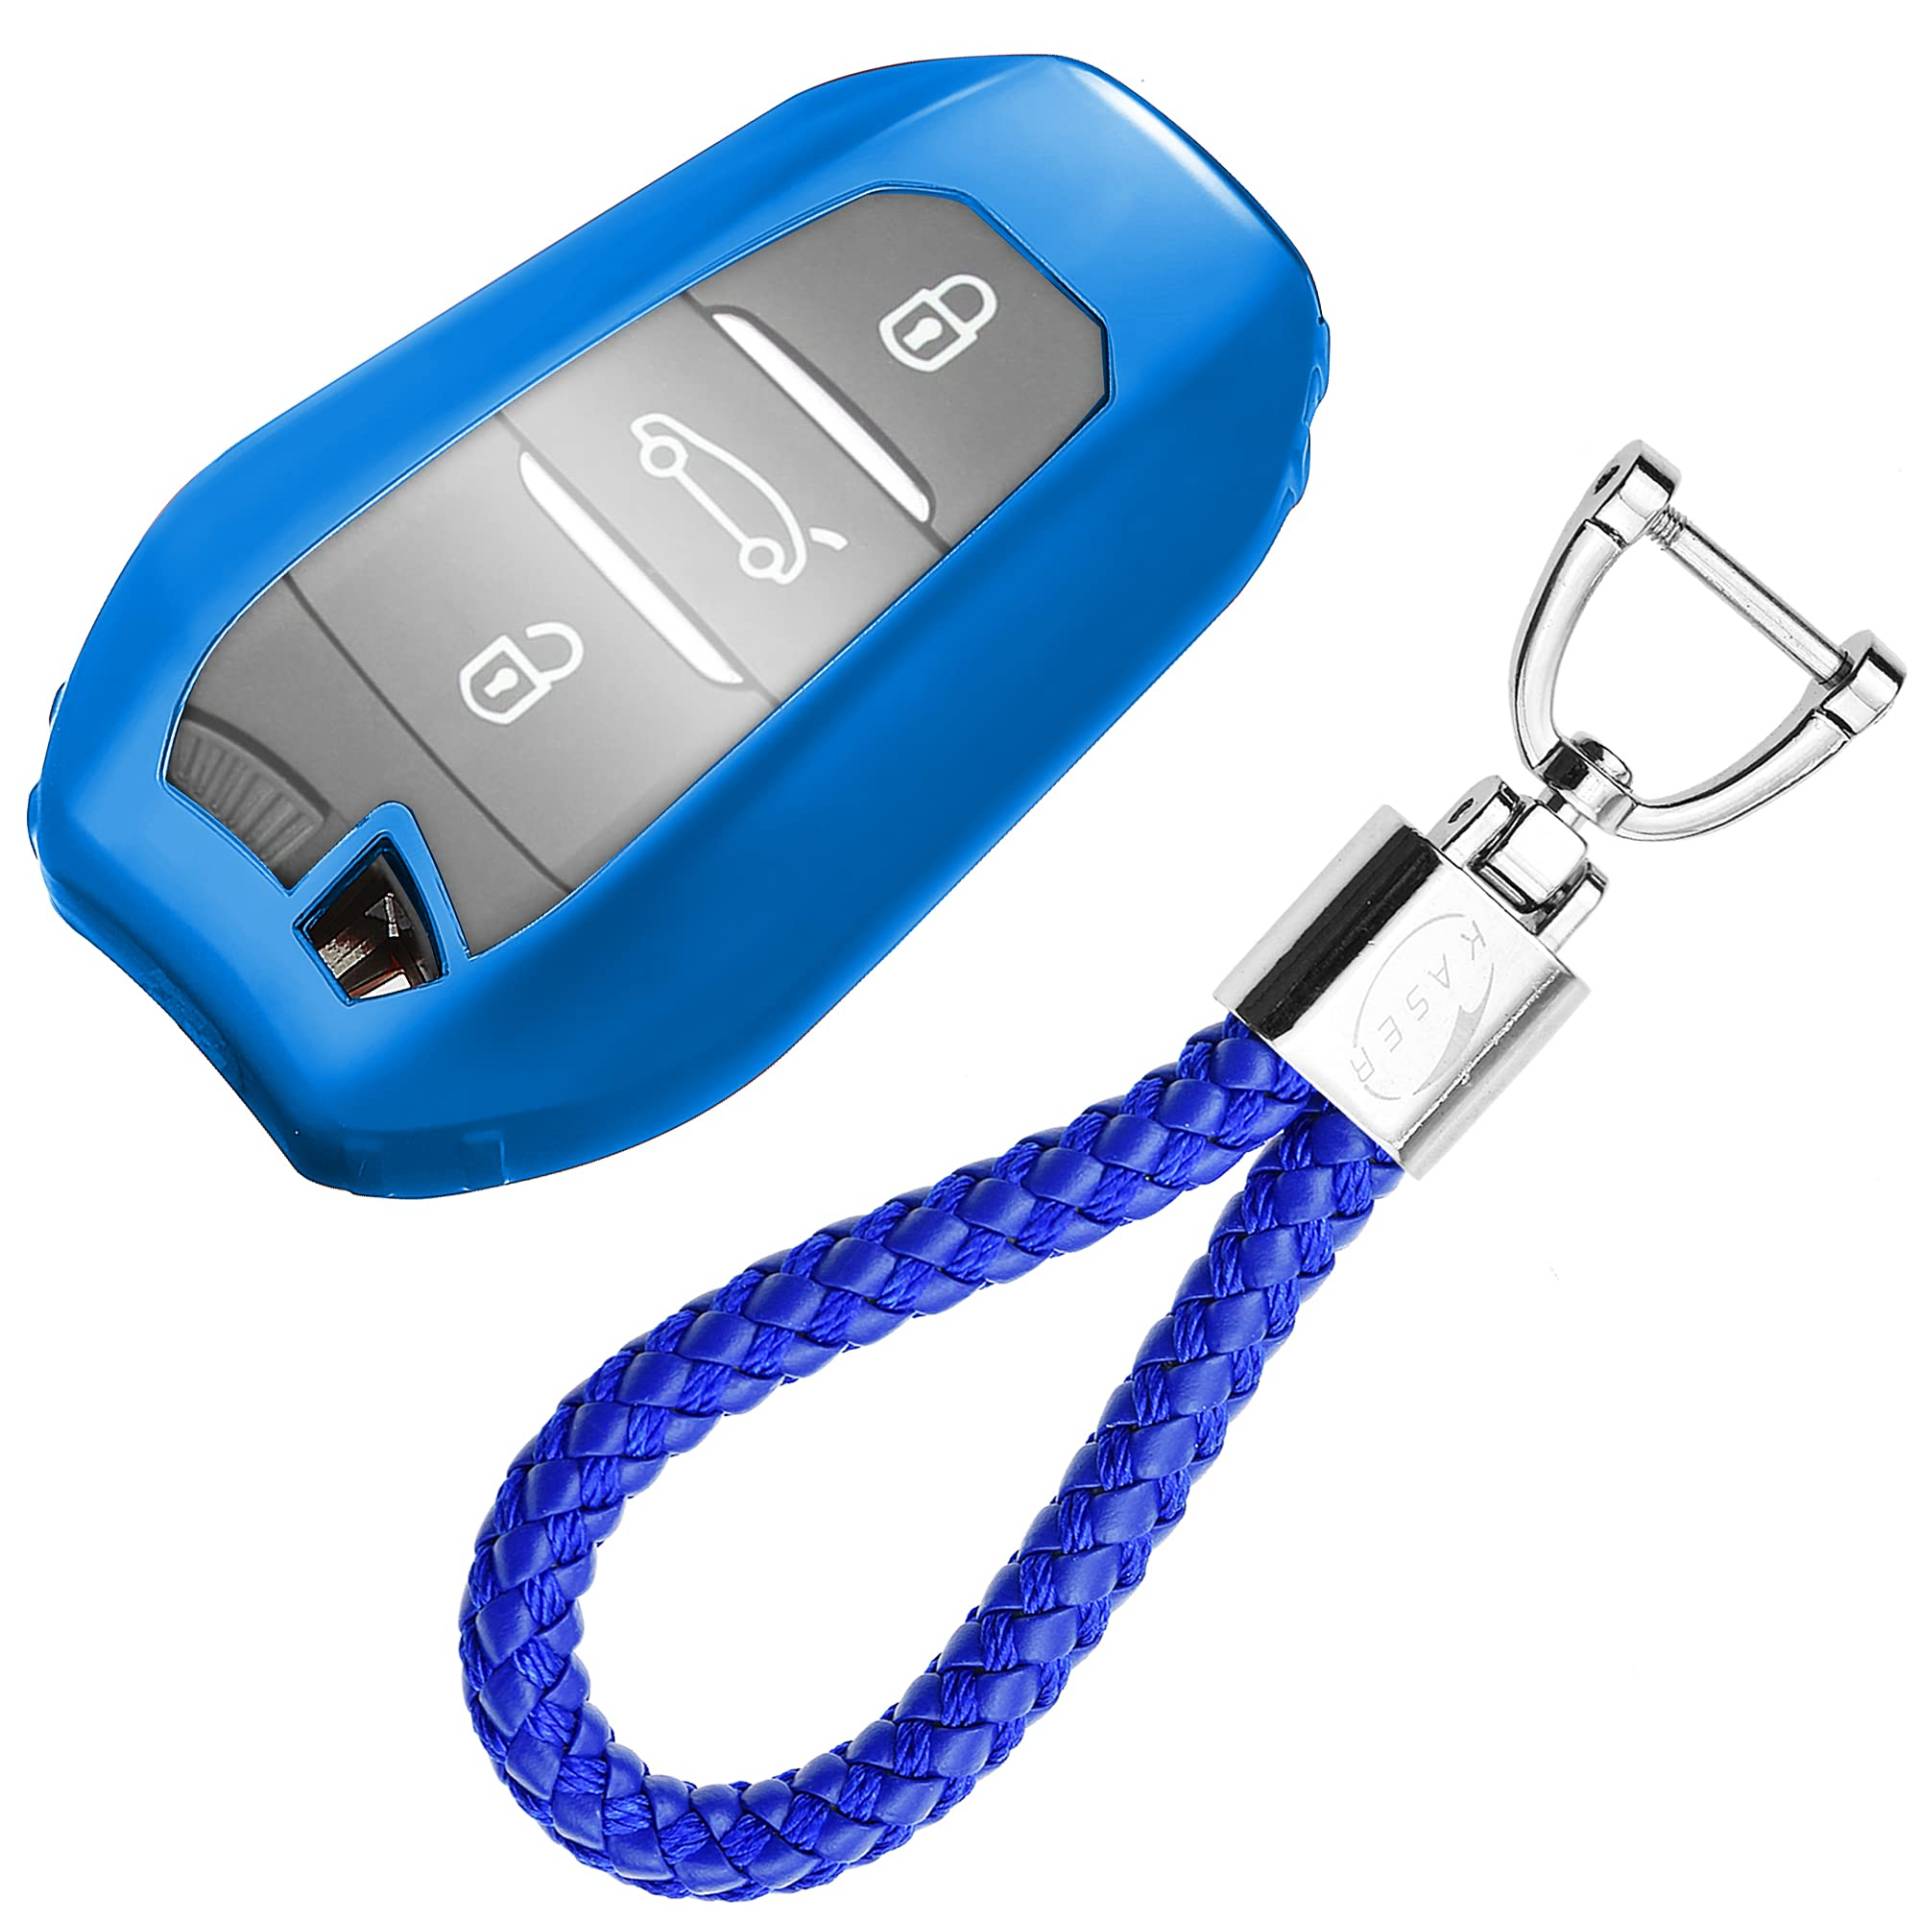 KASER Autoschlüssel Hülle kompatibel für Peugeot Citroen Cover TPU Silikon Hochglanz Schutzhülle Schlüsselhülle Fernbedienung Keyless 3008 5008 Citroen DS Schlüsselbund (Blau) von Kaser